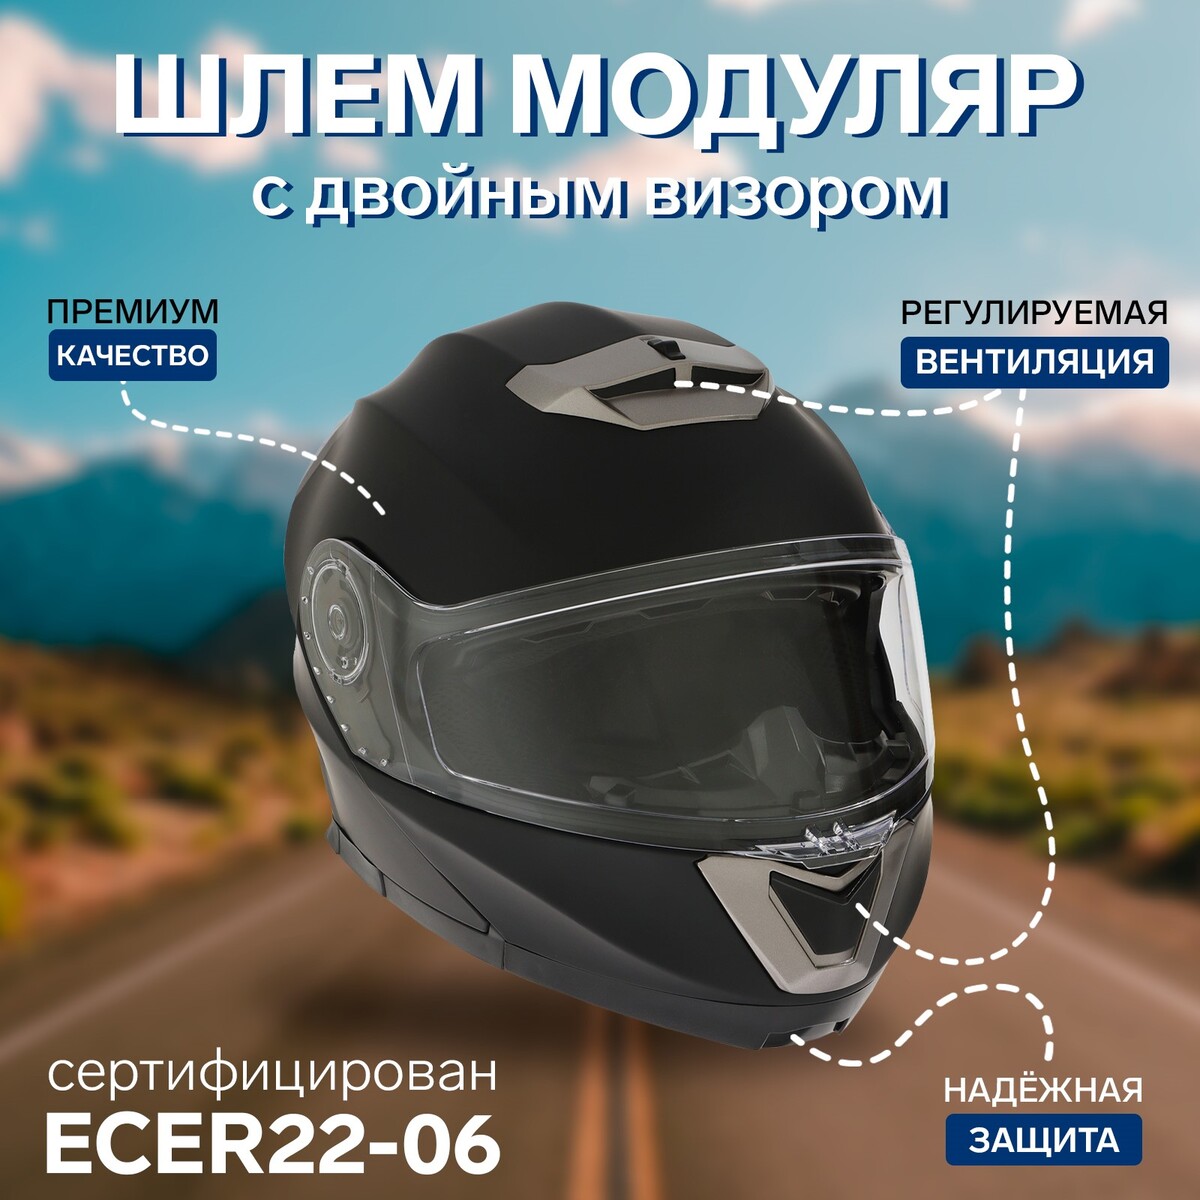 Шлем модуляр с двумя визорами, размер xxl (61), модель - bld-160e, черный матовый